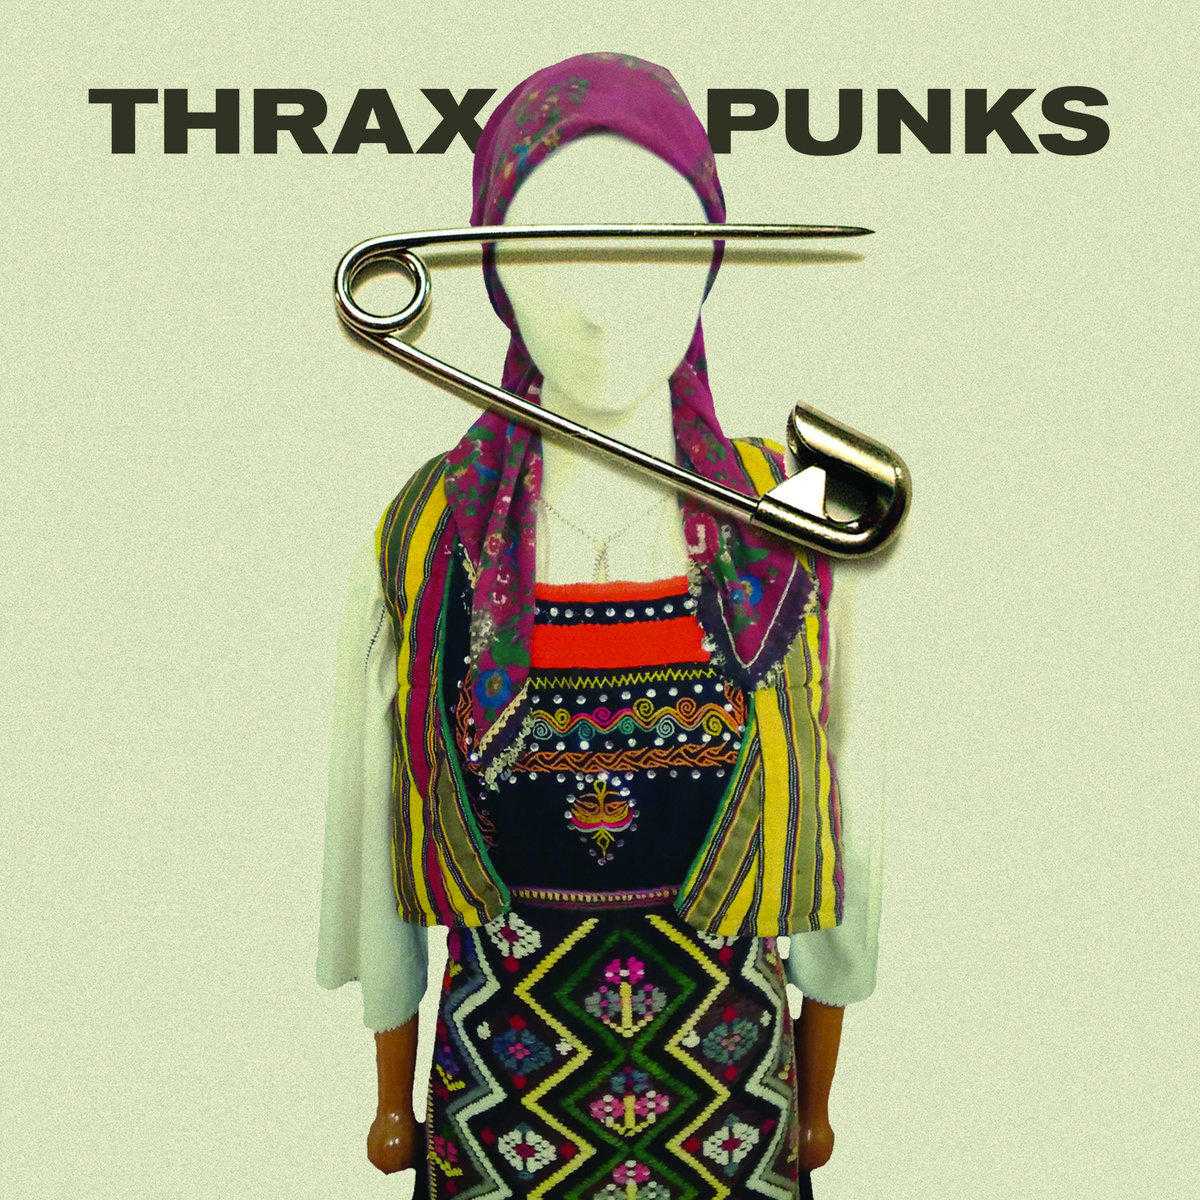 Θραξ Πάνκc - Thrax Punks